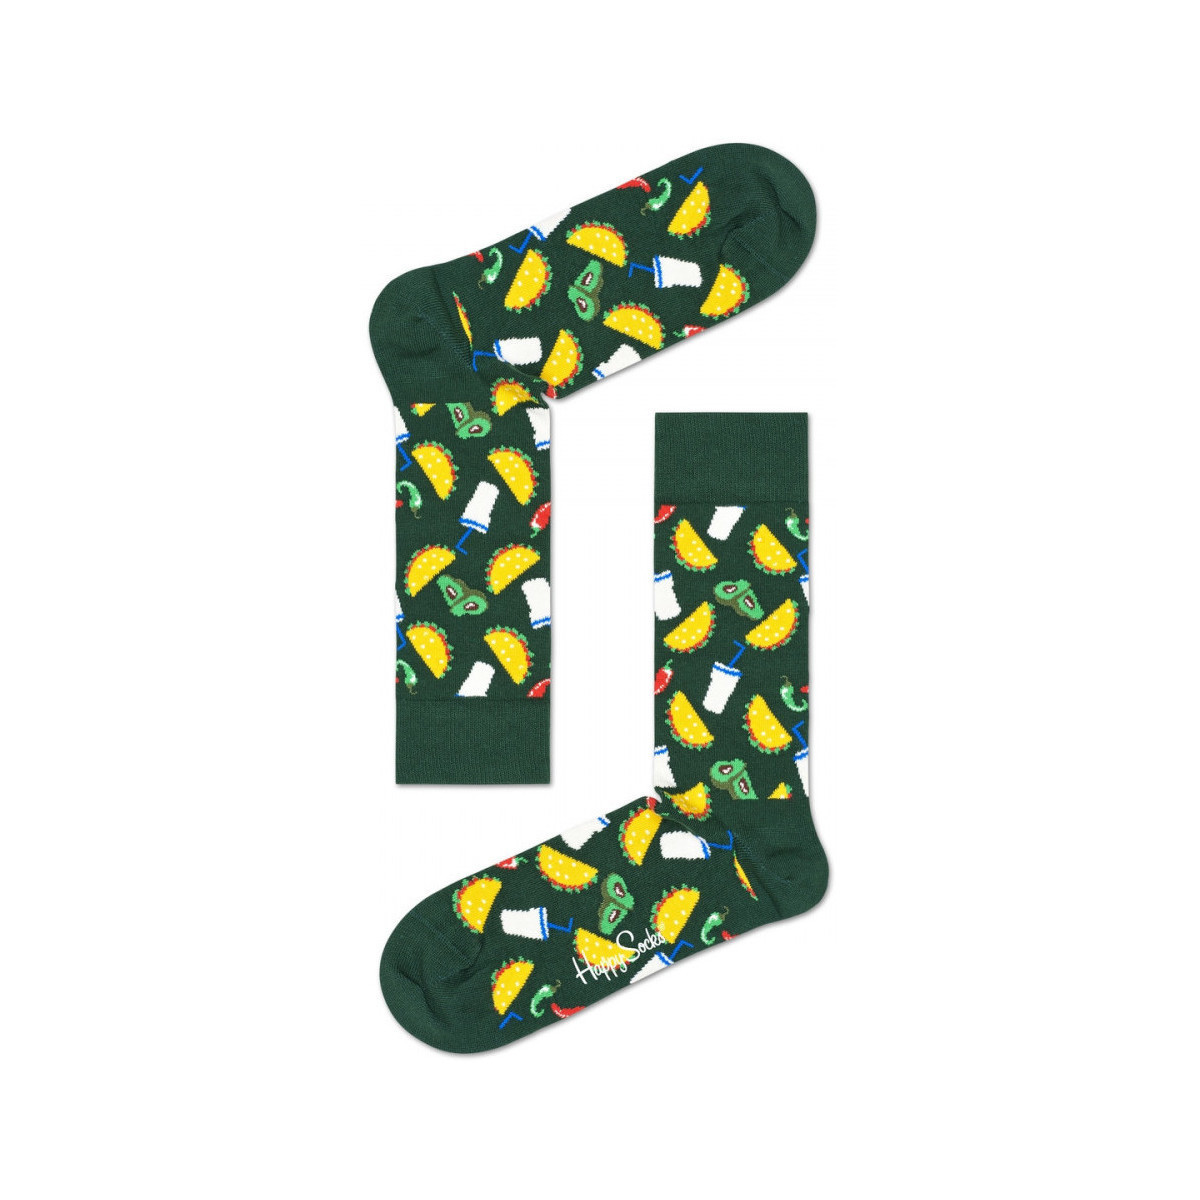 Spodní prádlo Muži Ponožky Happy socks Taco sock           